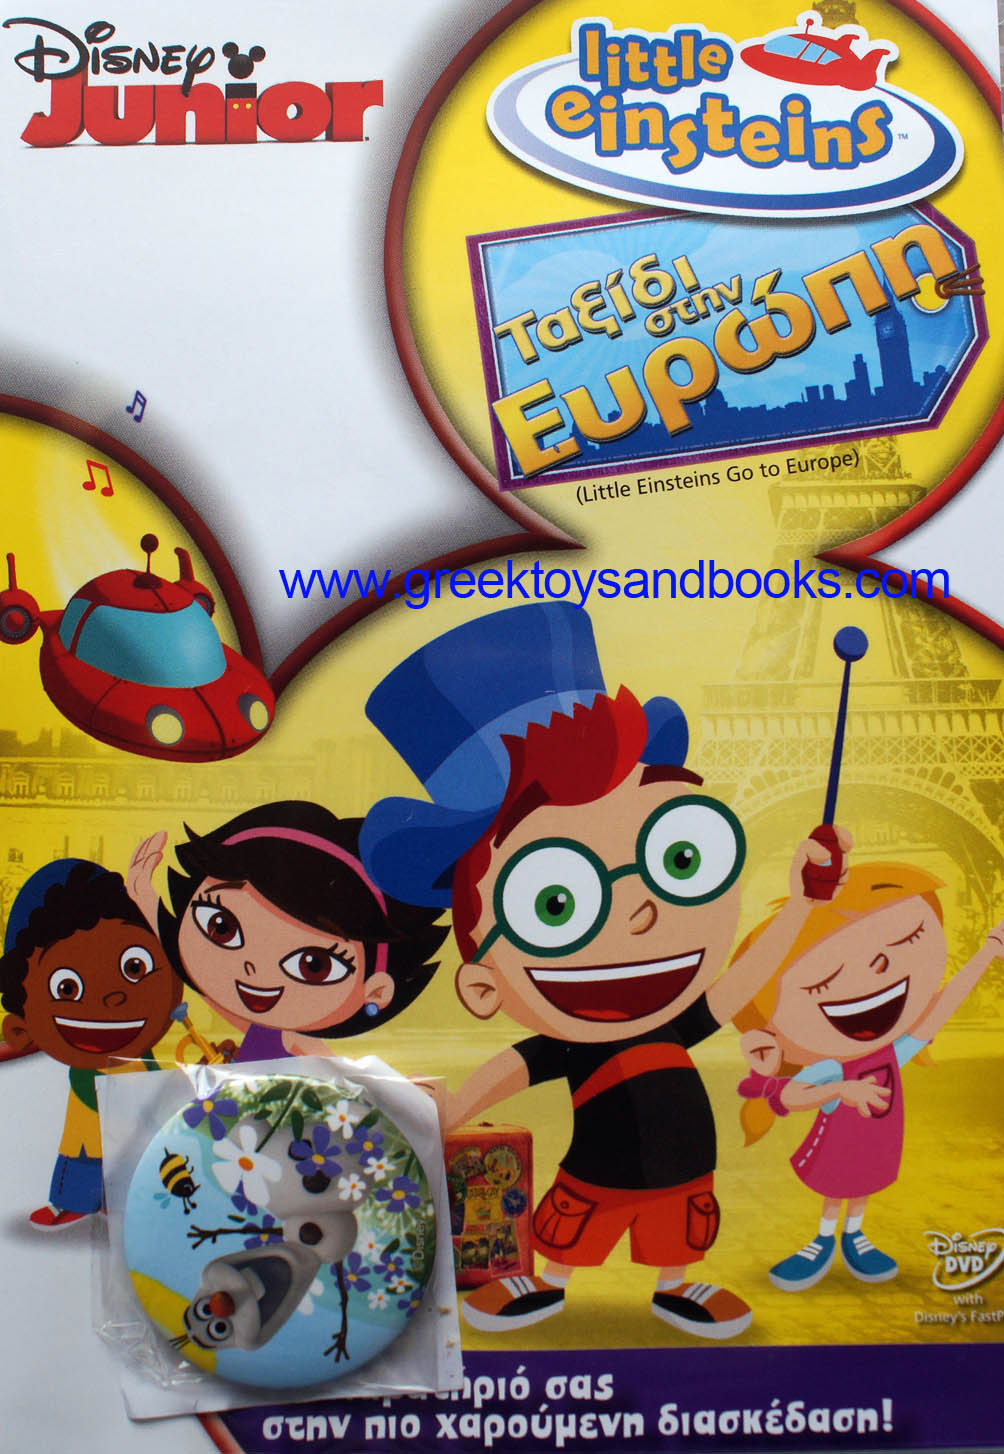 Little Einsteins Go to Europe DVD